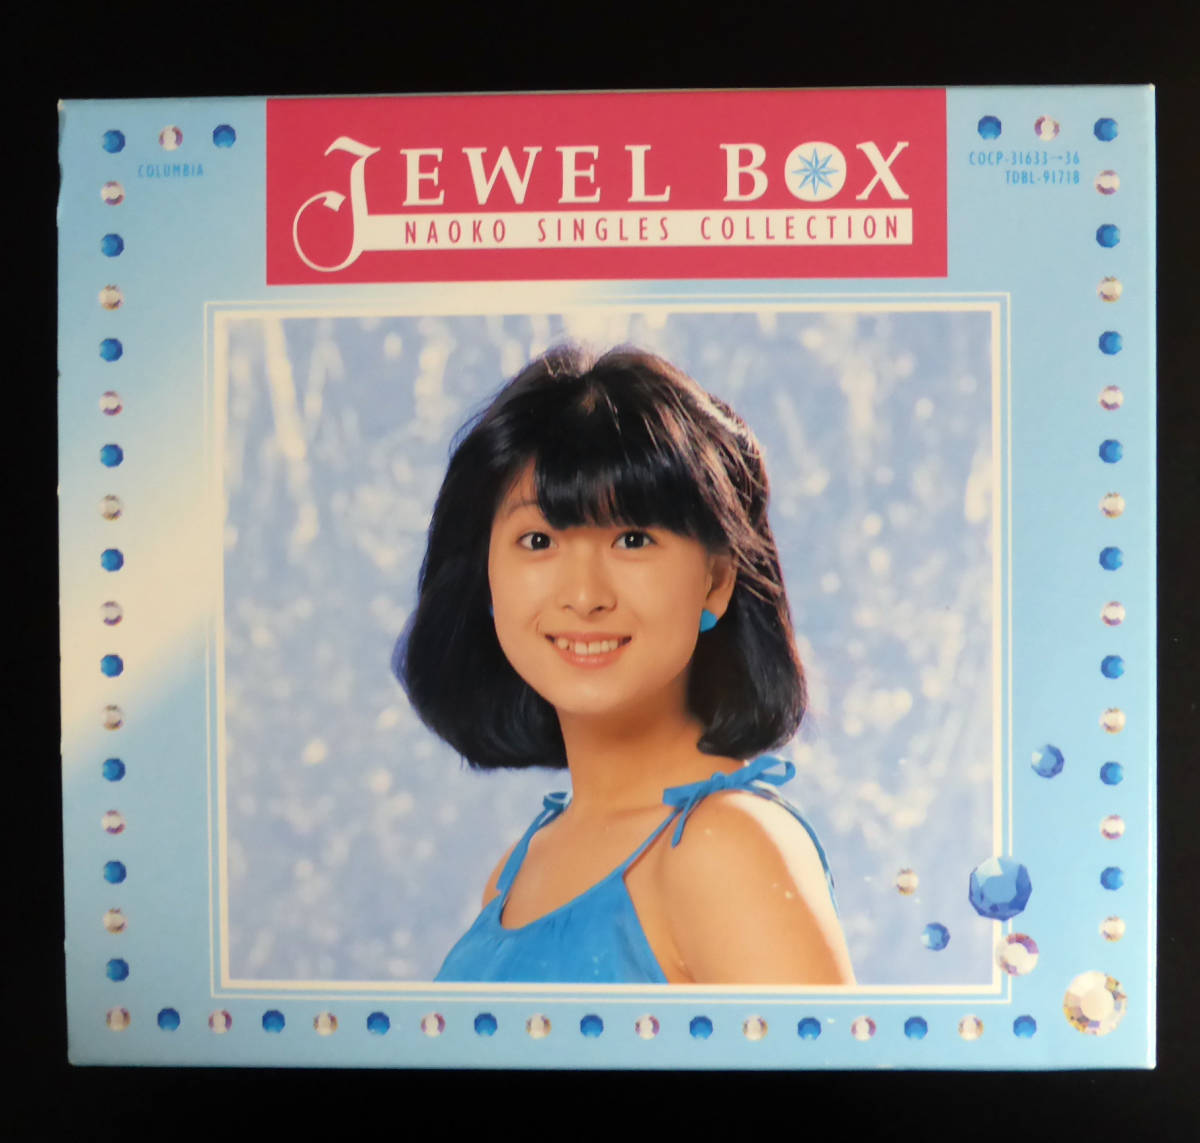  Kawai Naoko BOX одиночный * коллекция Jewel Box~Naoko Singles Collection